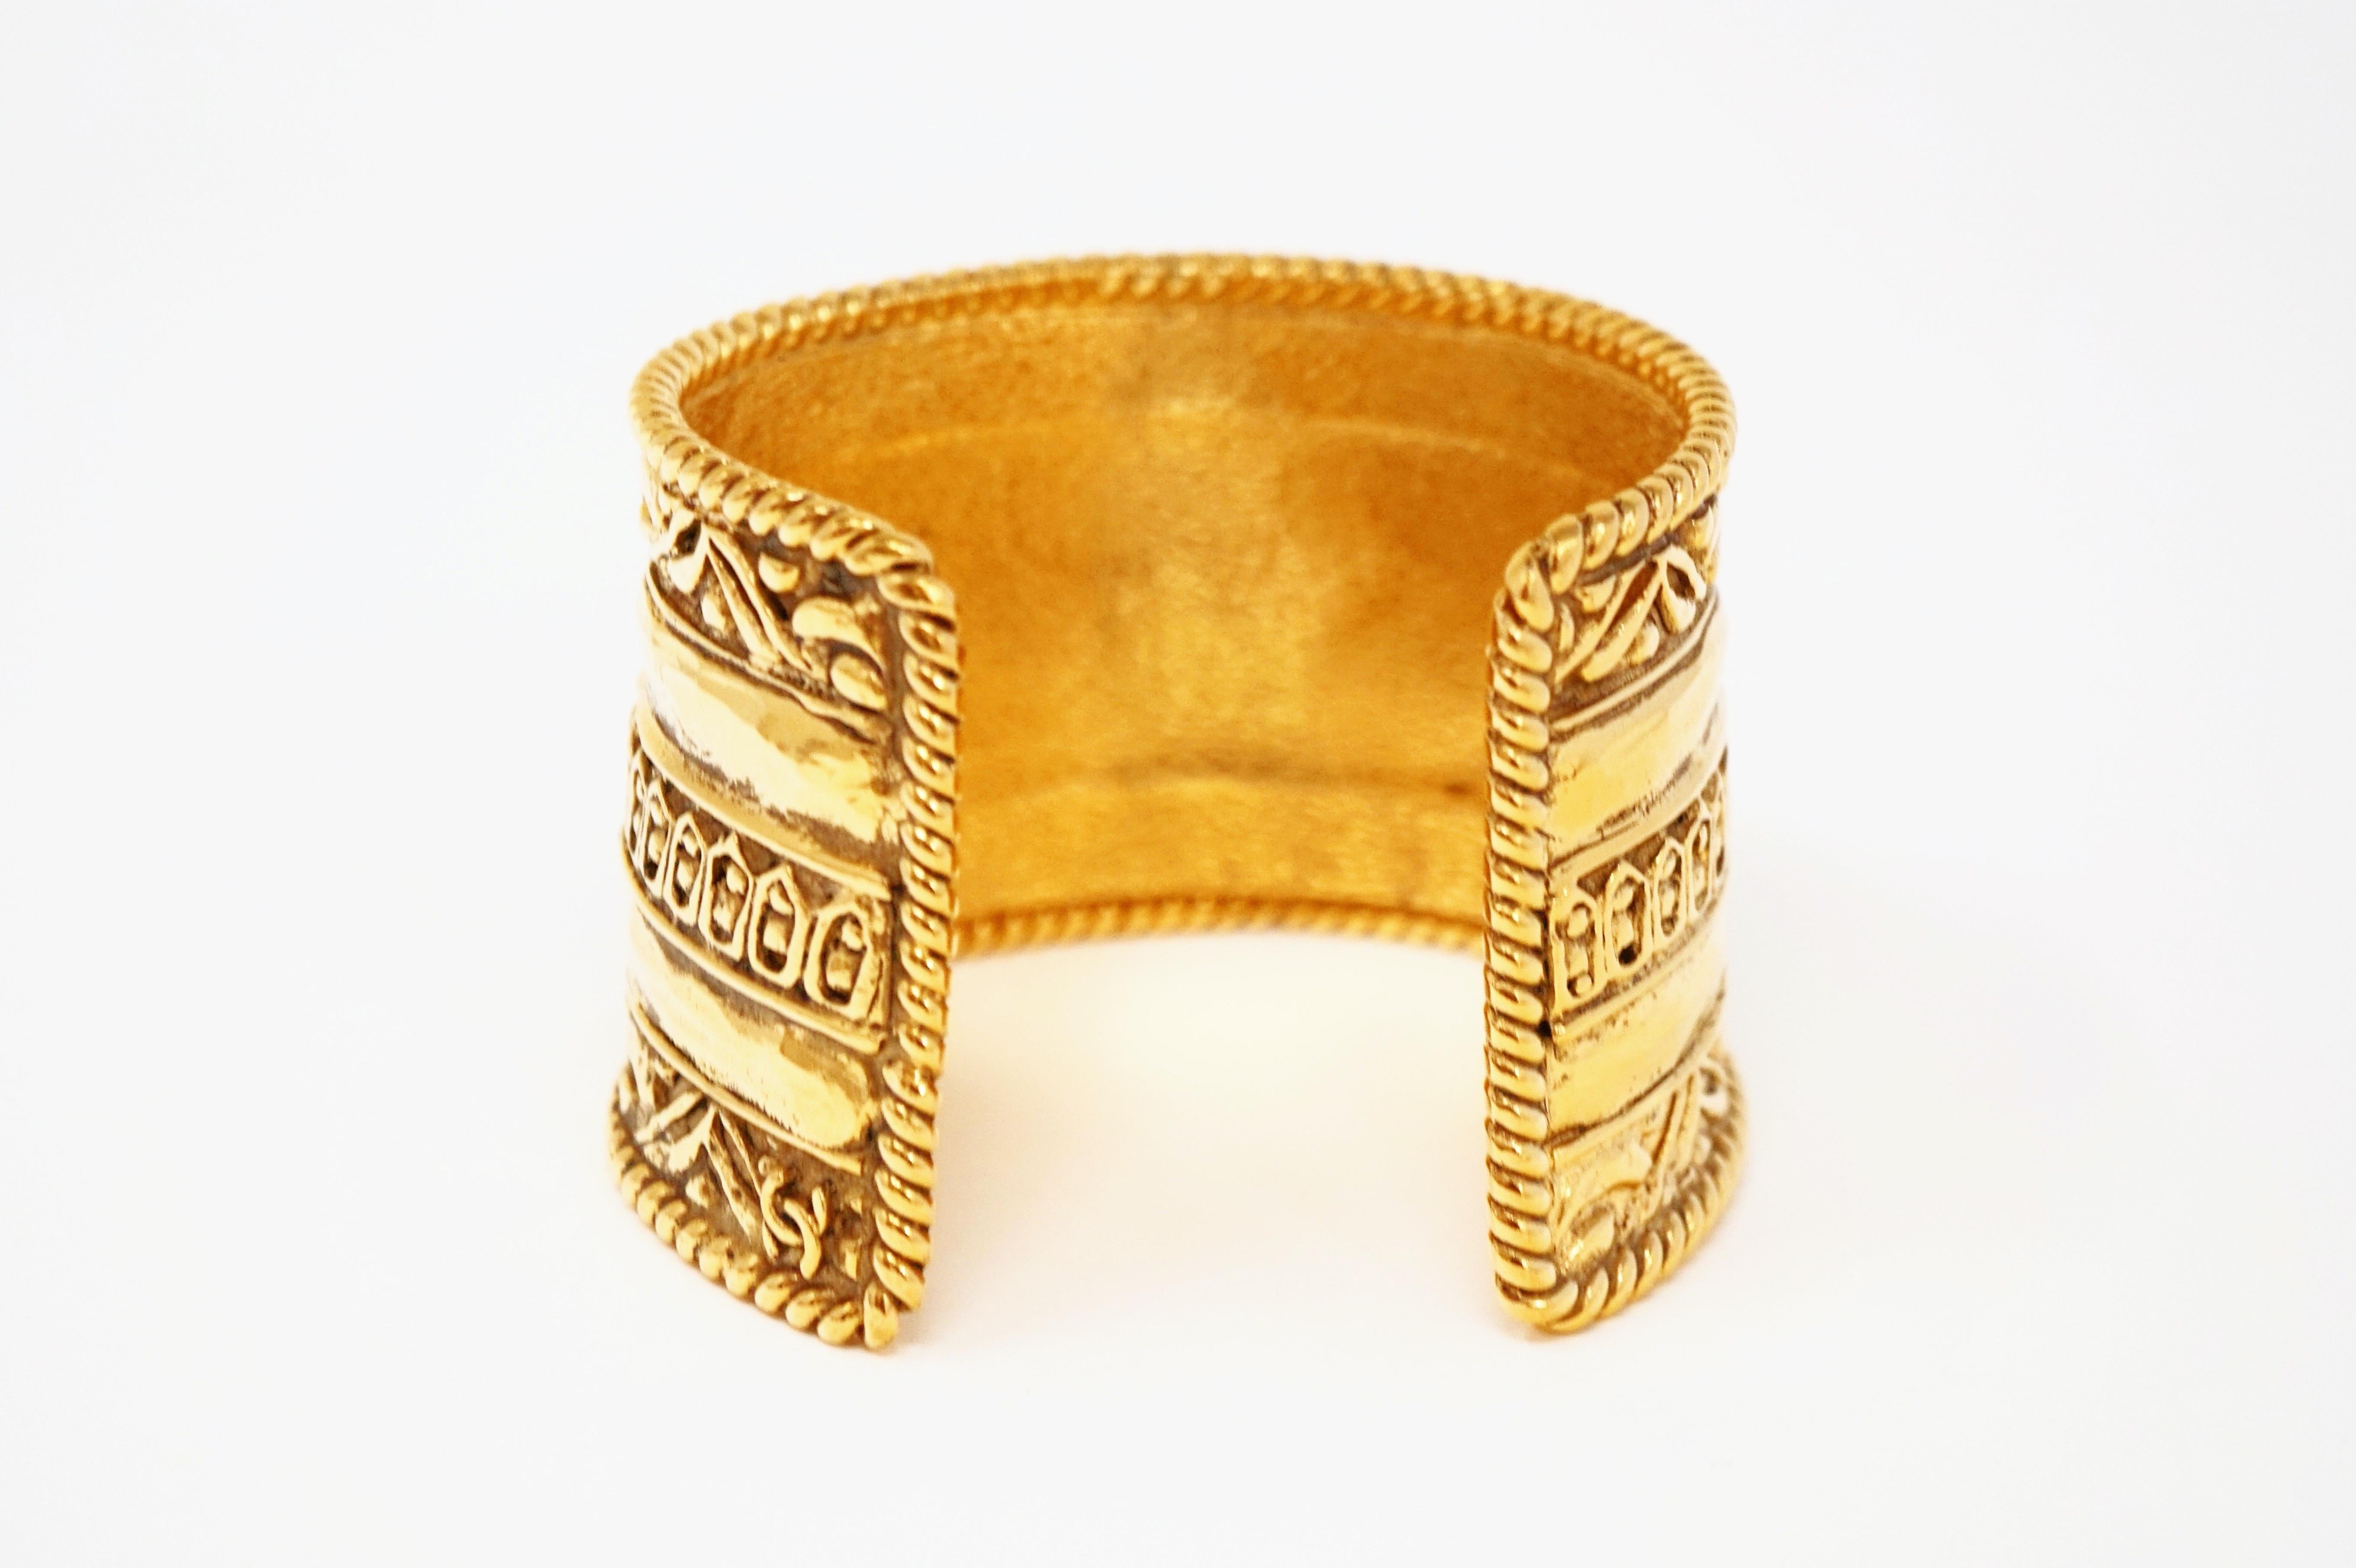 Vintage Chanel Ornate Etruscan Gilded Cuff Bracelet, Signed 2